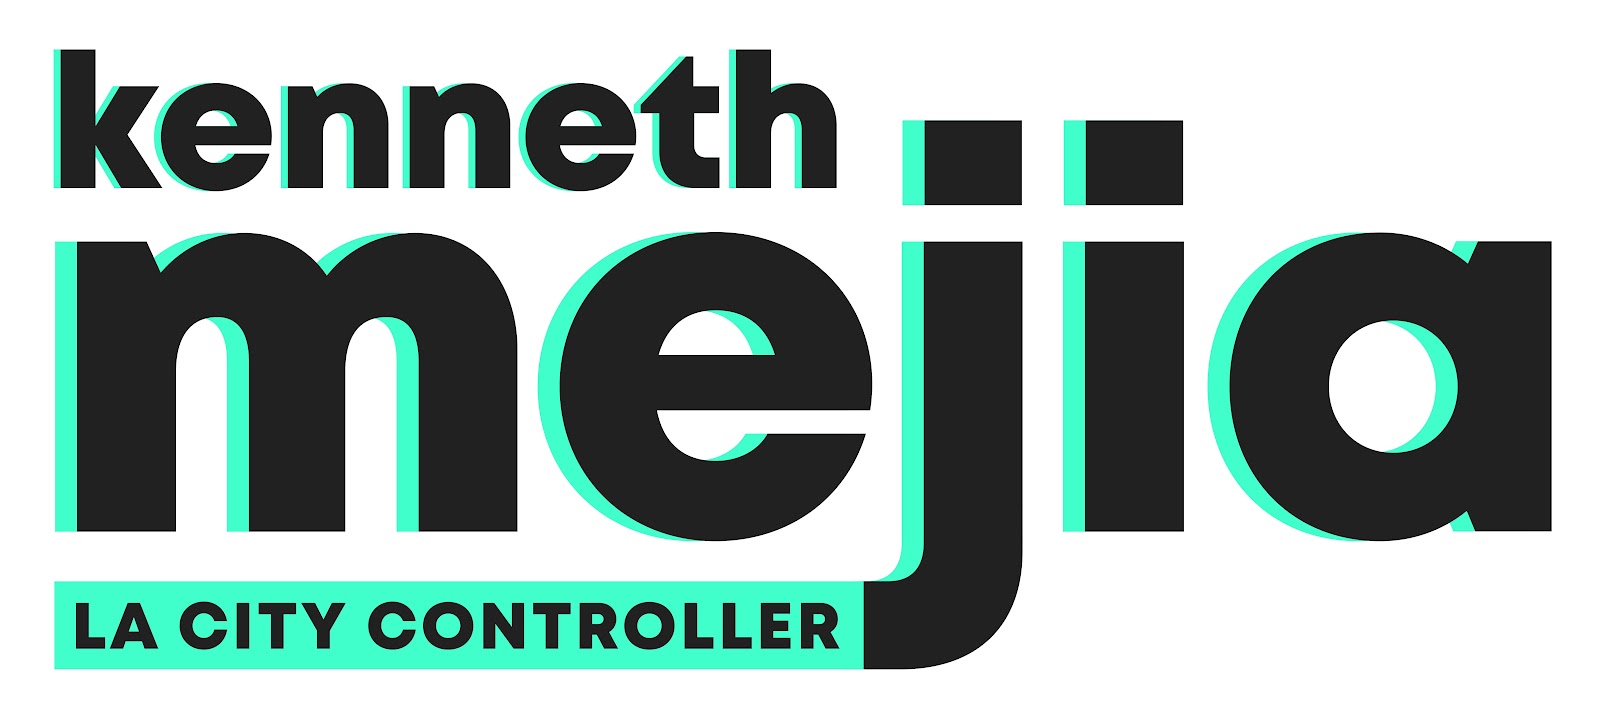 controller logo